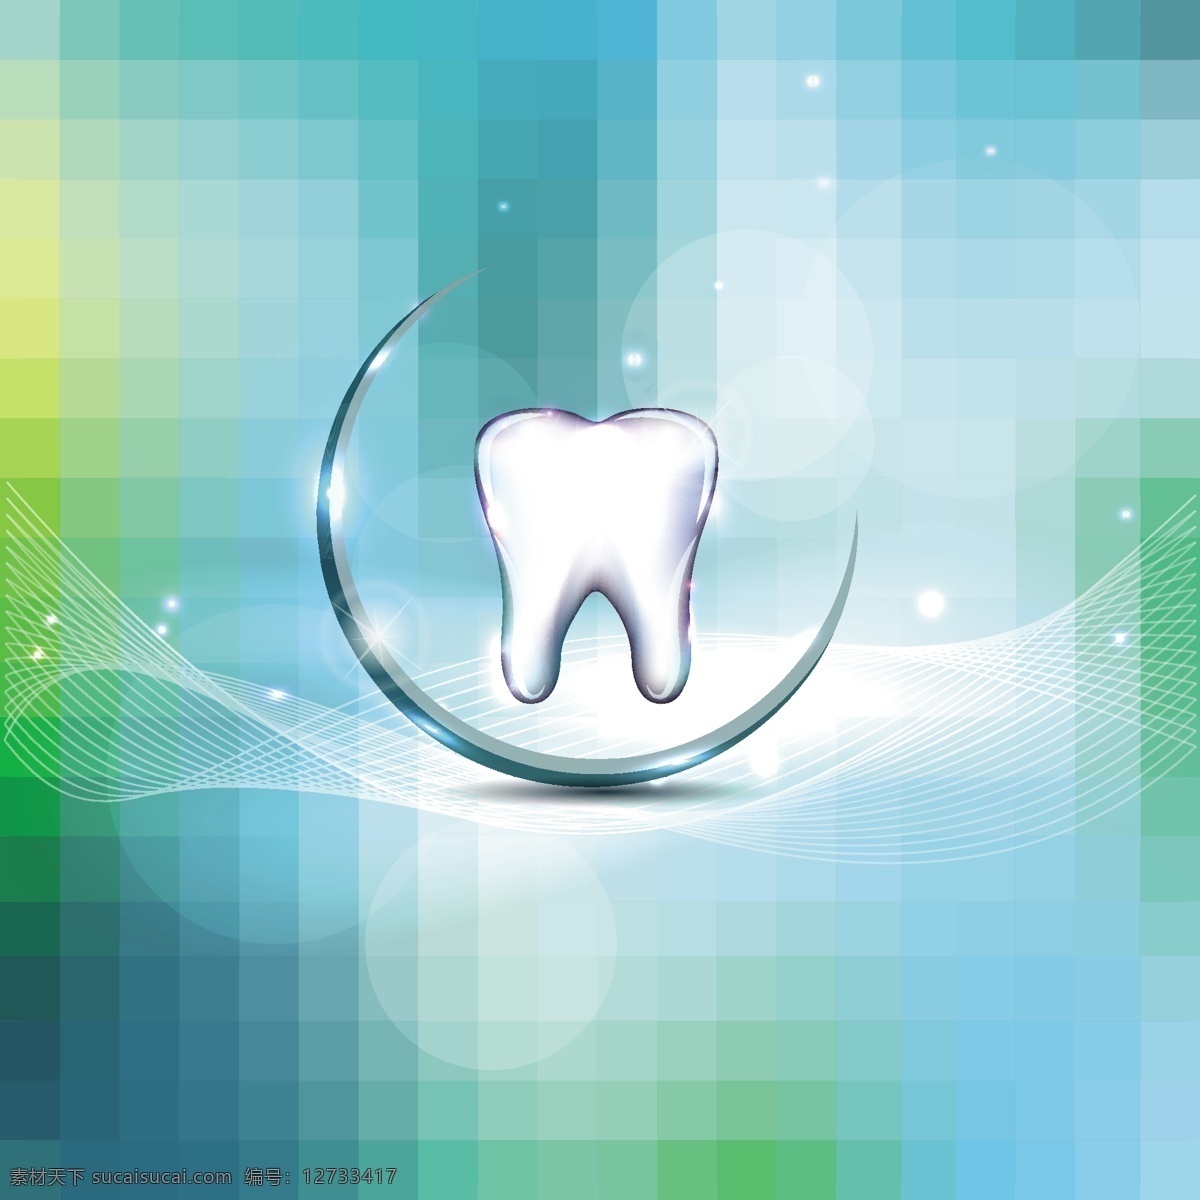 卡通牙齿 牙齿 牙科 口腔 治疗牙齿 牙科诊所 口腔诊所 牙科医院 牙医 保护牙齿 护齿 口腔医院 刷牙 图标 标志图标 其他图标